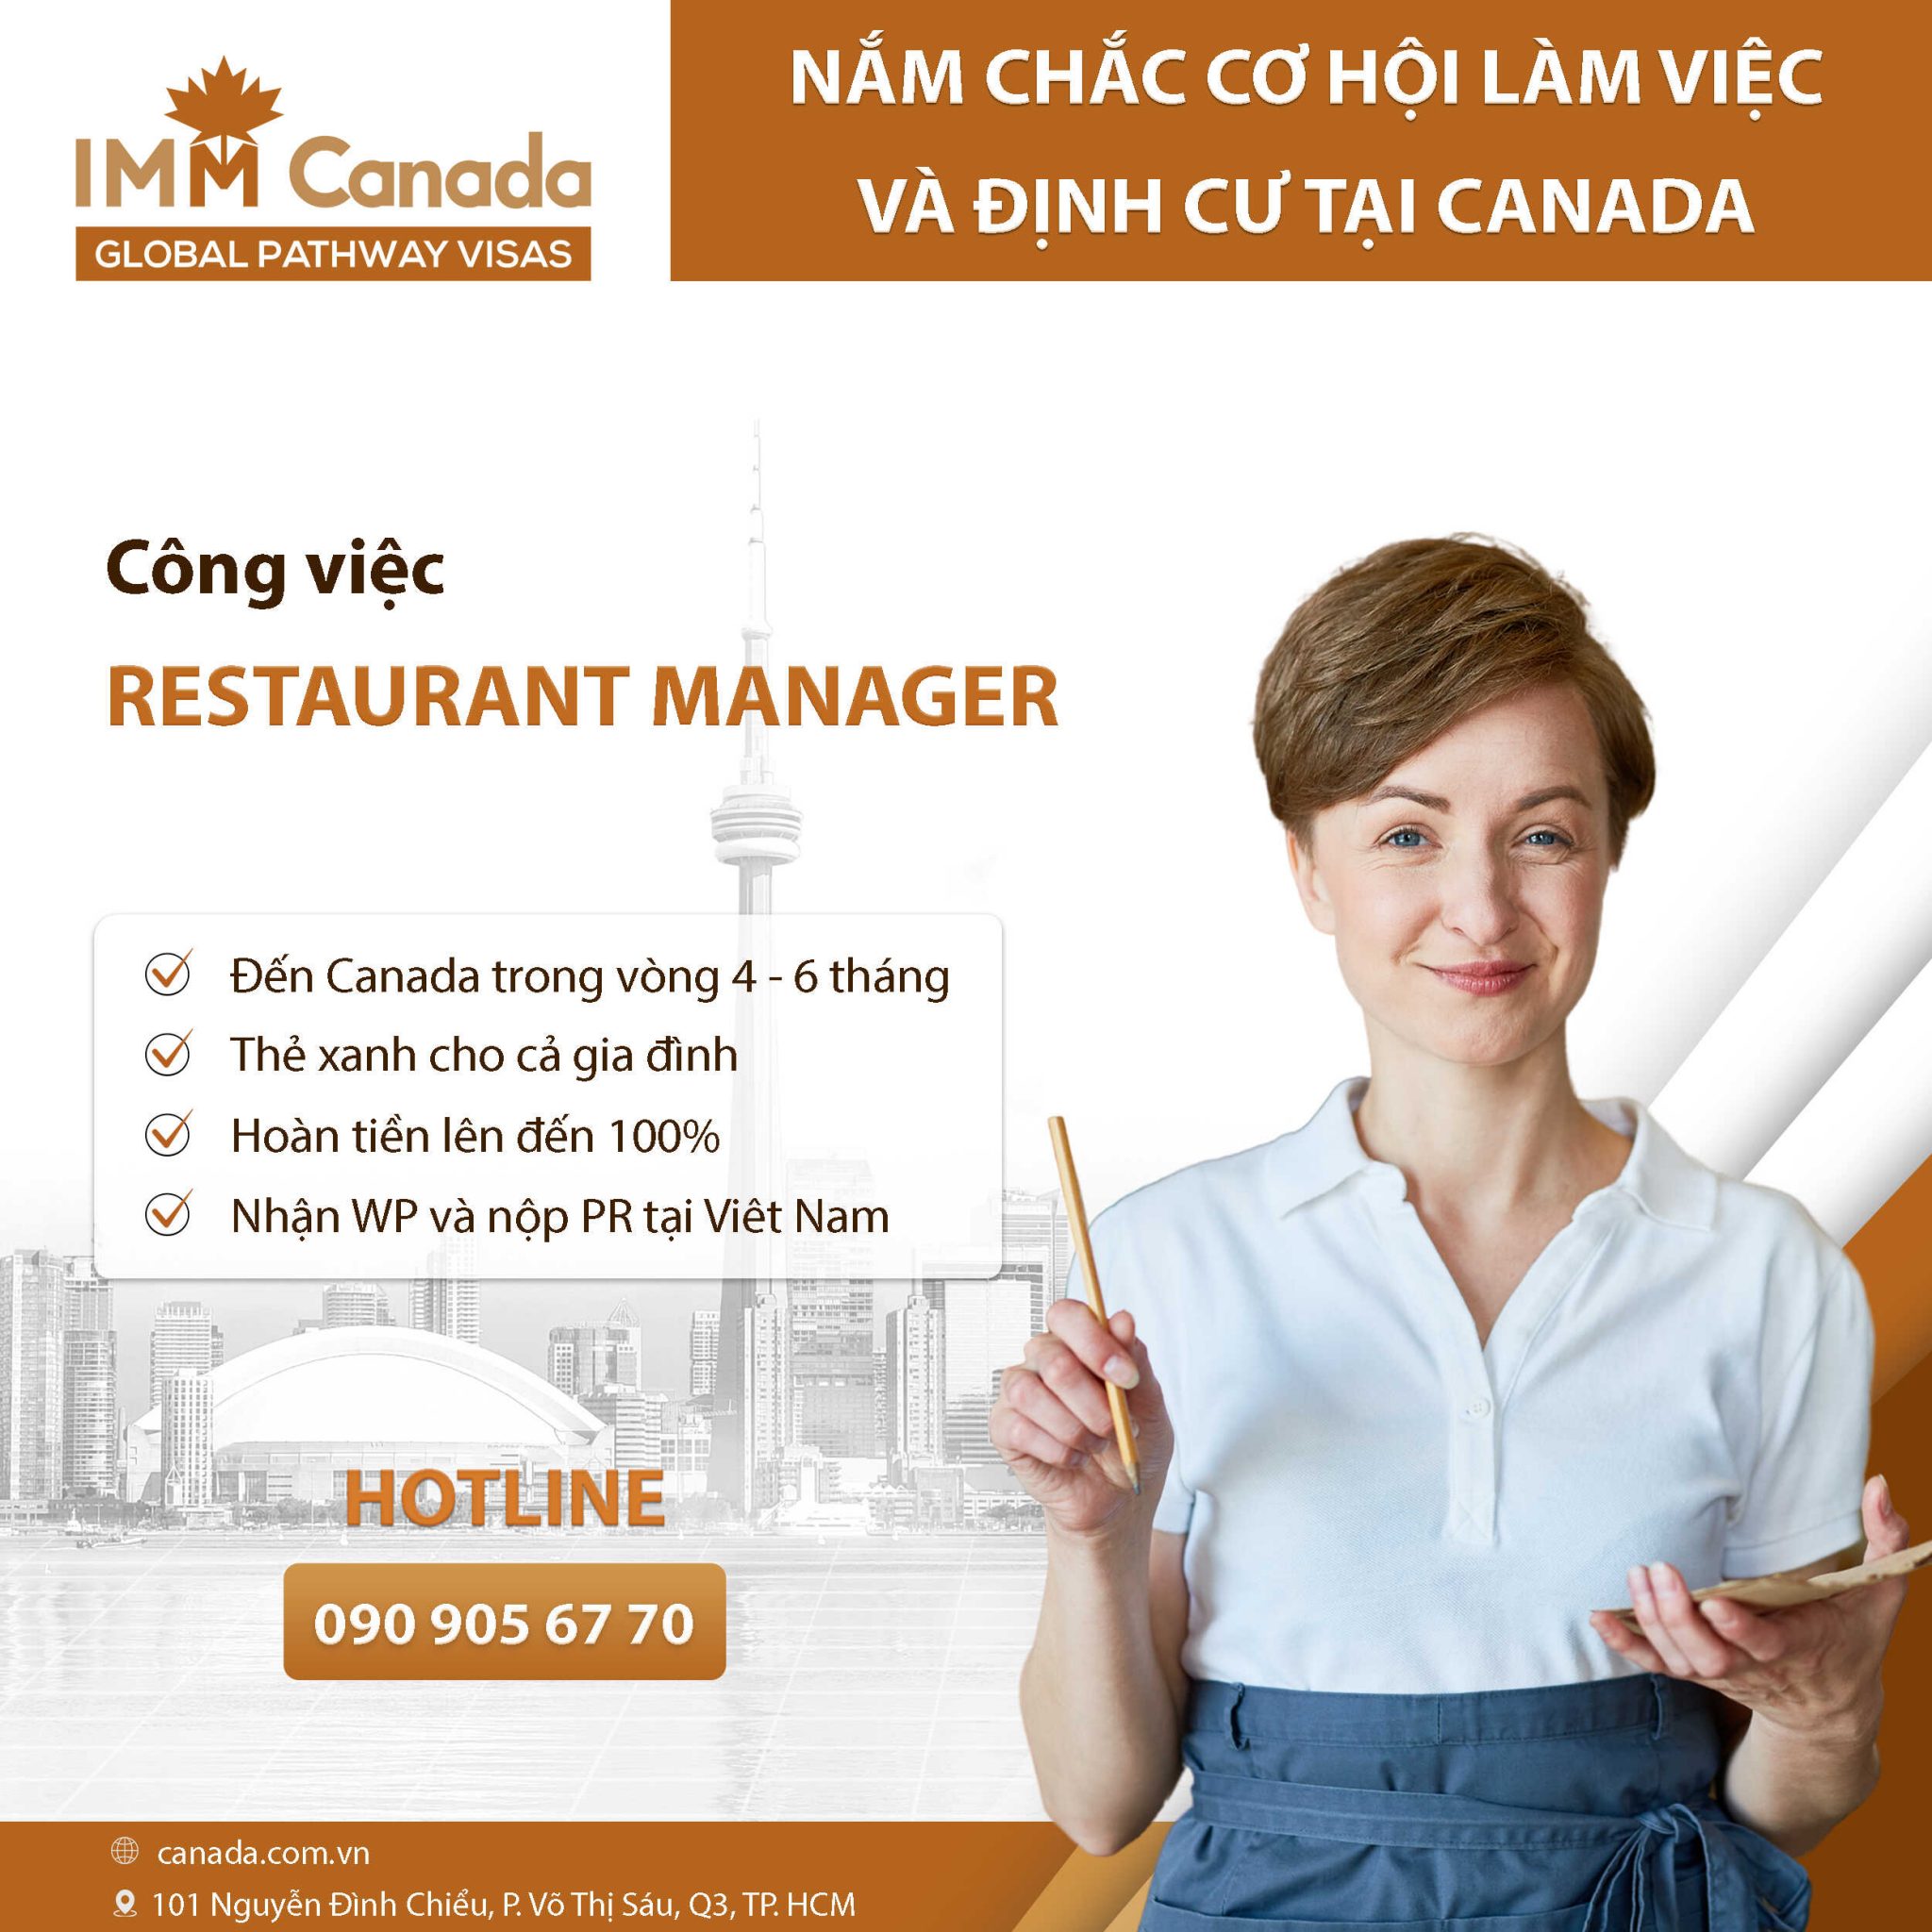 Định cư Canada diện tay nghề lĩnh vực F&B - Restaurant Manager